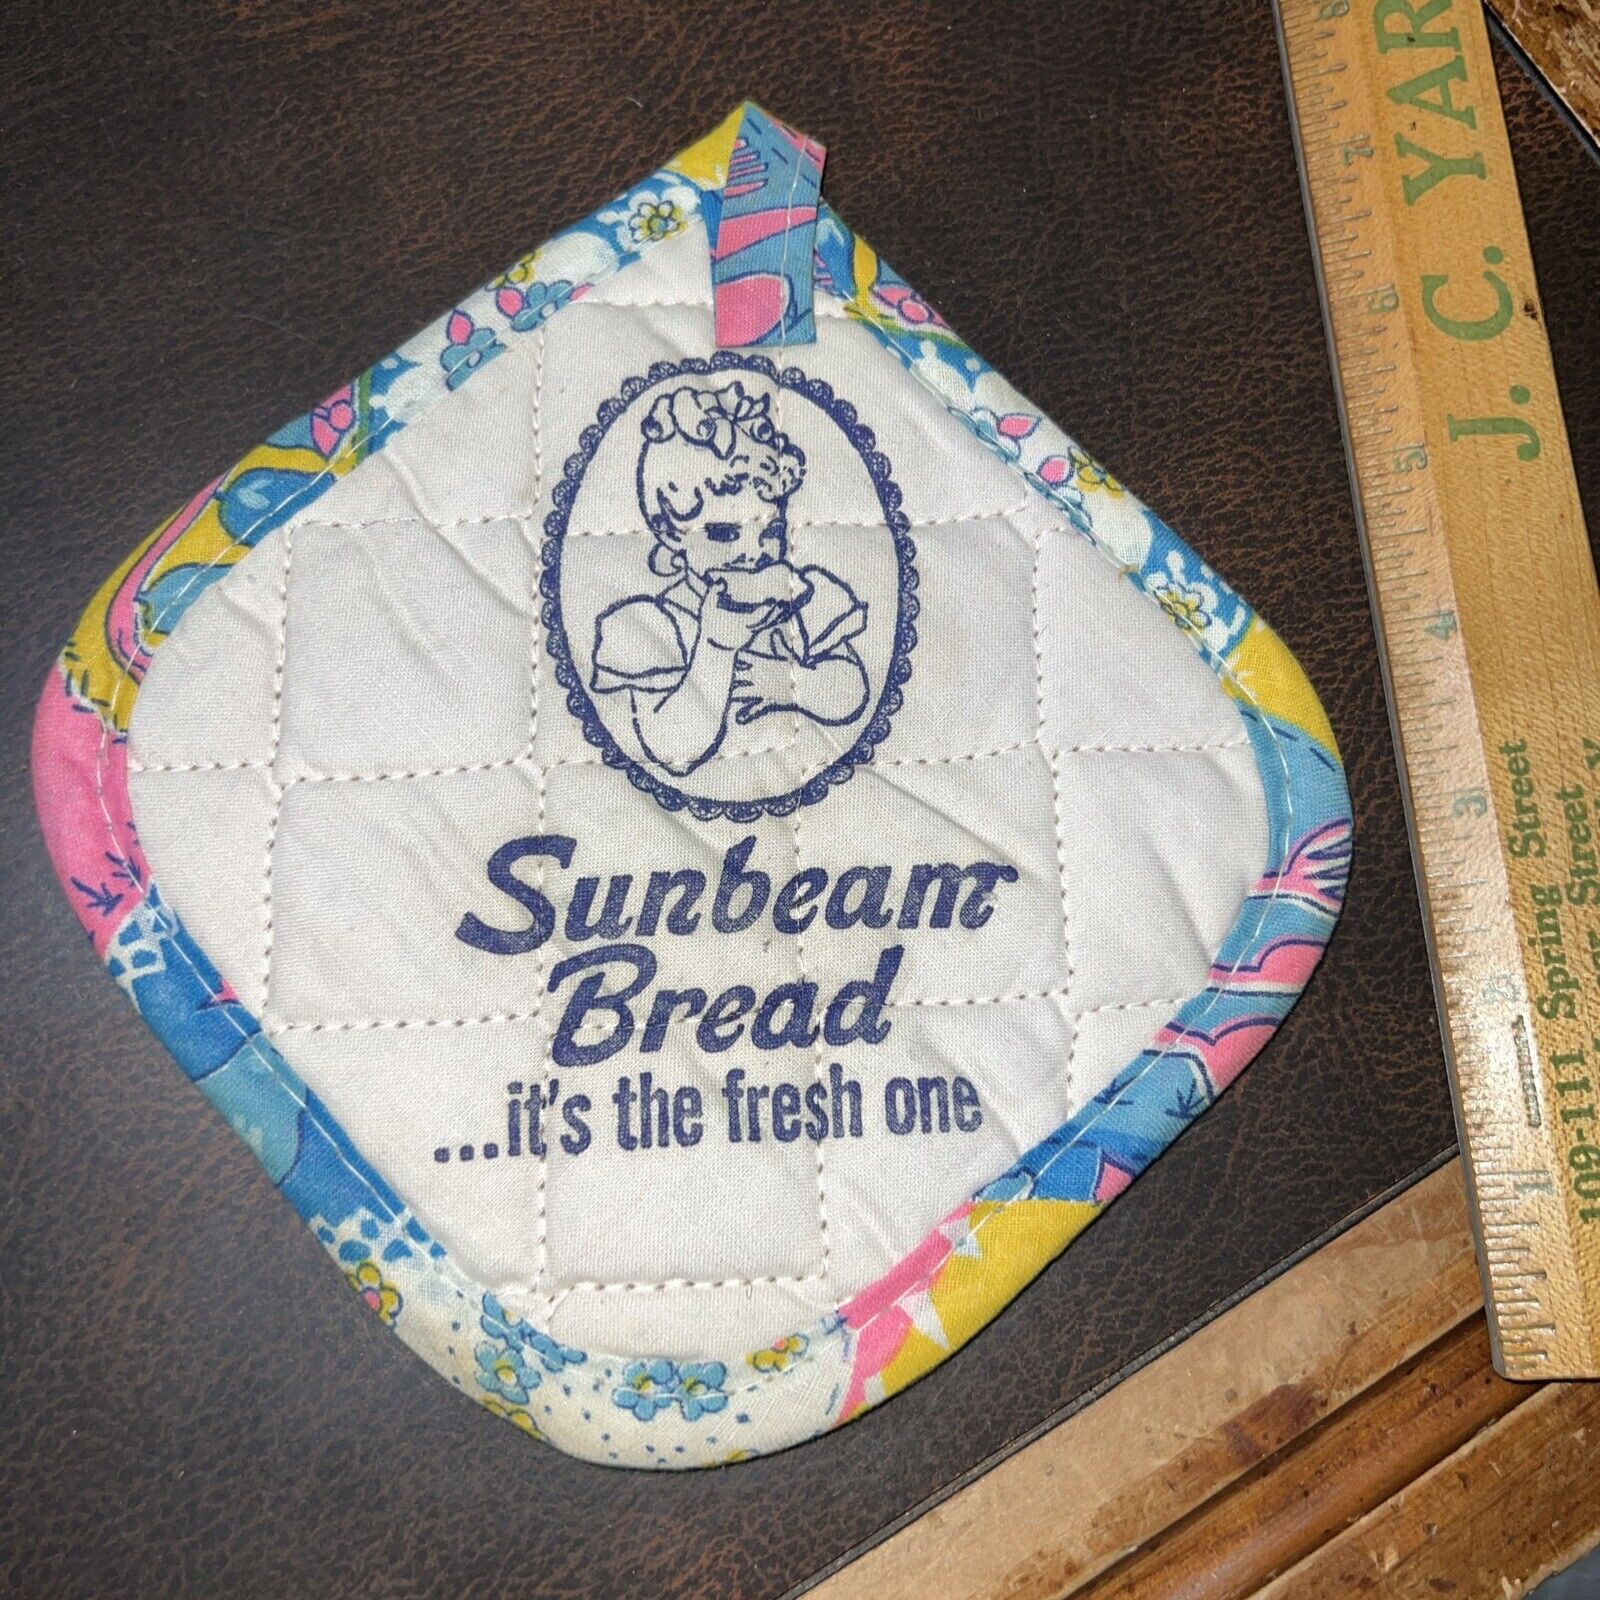 Vintage 1970s Sunbeam Bread Advertising Premium